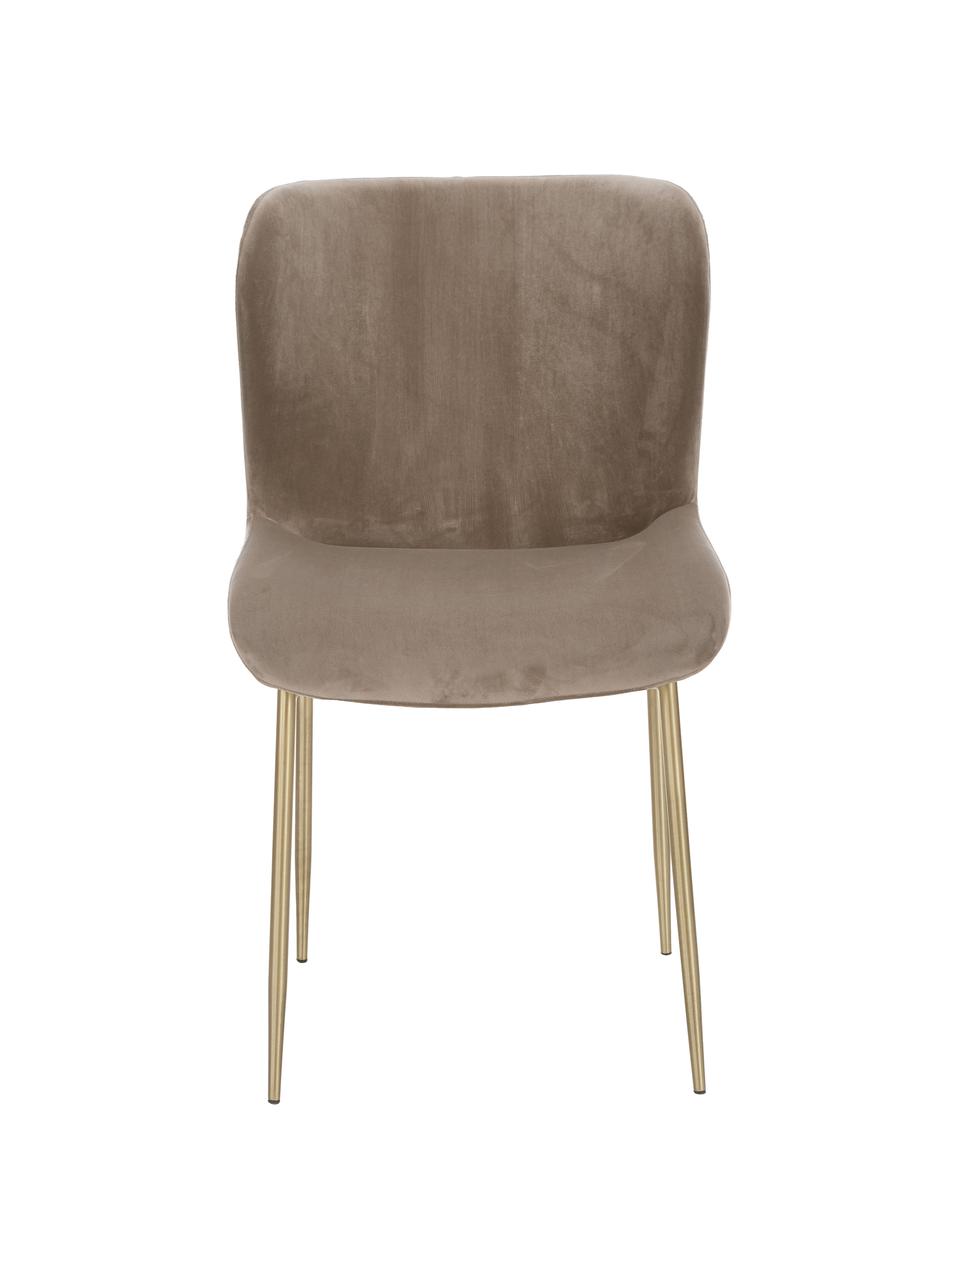 Fluwelen stoel Tess in taupe, Bekleding: fluweel (polyester), Poten: gepoedercoat metaal, Fluweel taupe, goudkleurig, 49 x 84 cm